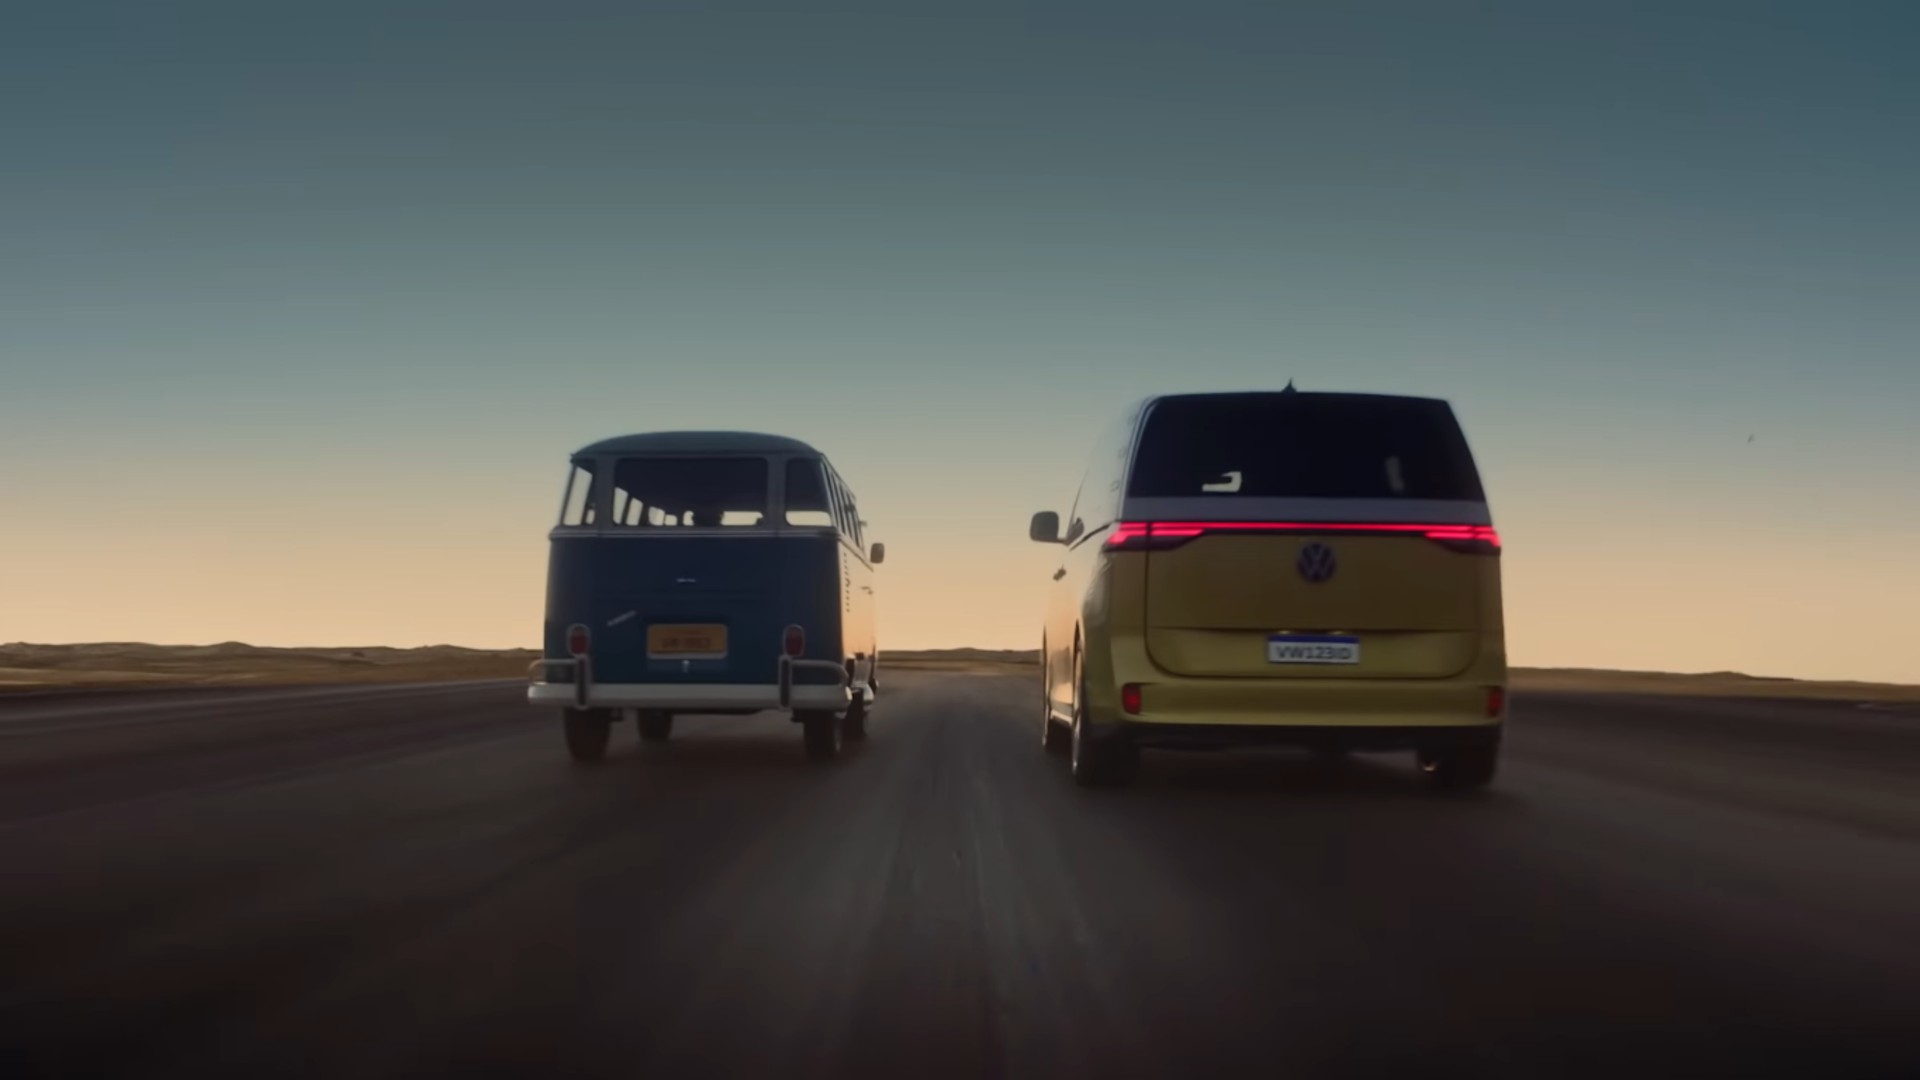 Volkswagen feiert 70 Jahre mit einem emotionalen Video mit Maria Rita und Elis Regina